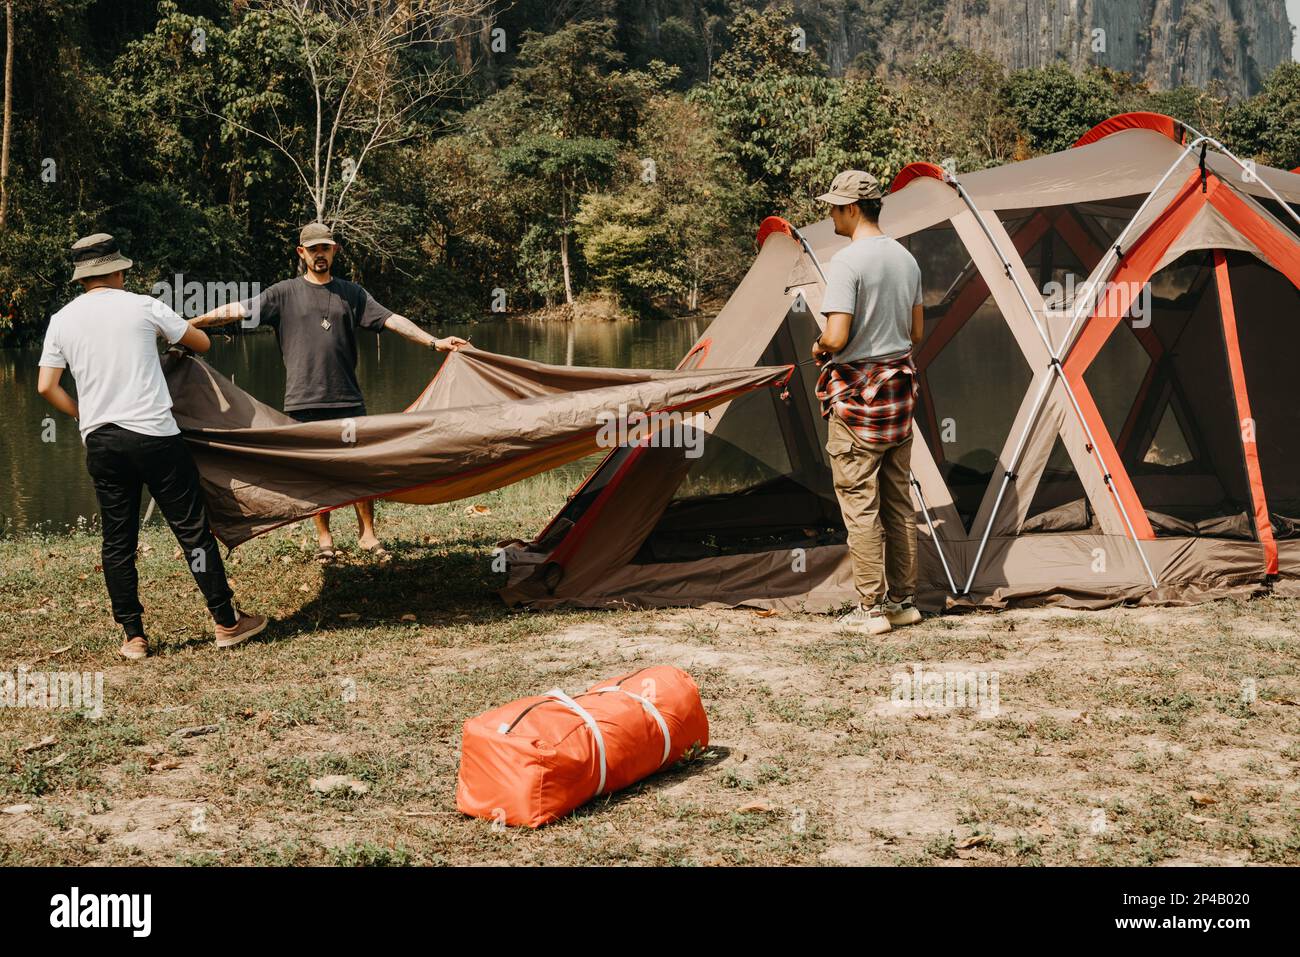 Los hombres jóvenes ayudan a establecer tiendas de campaña para acampar. Foto de stock